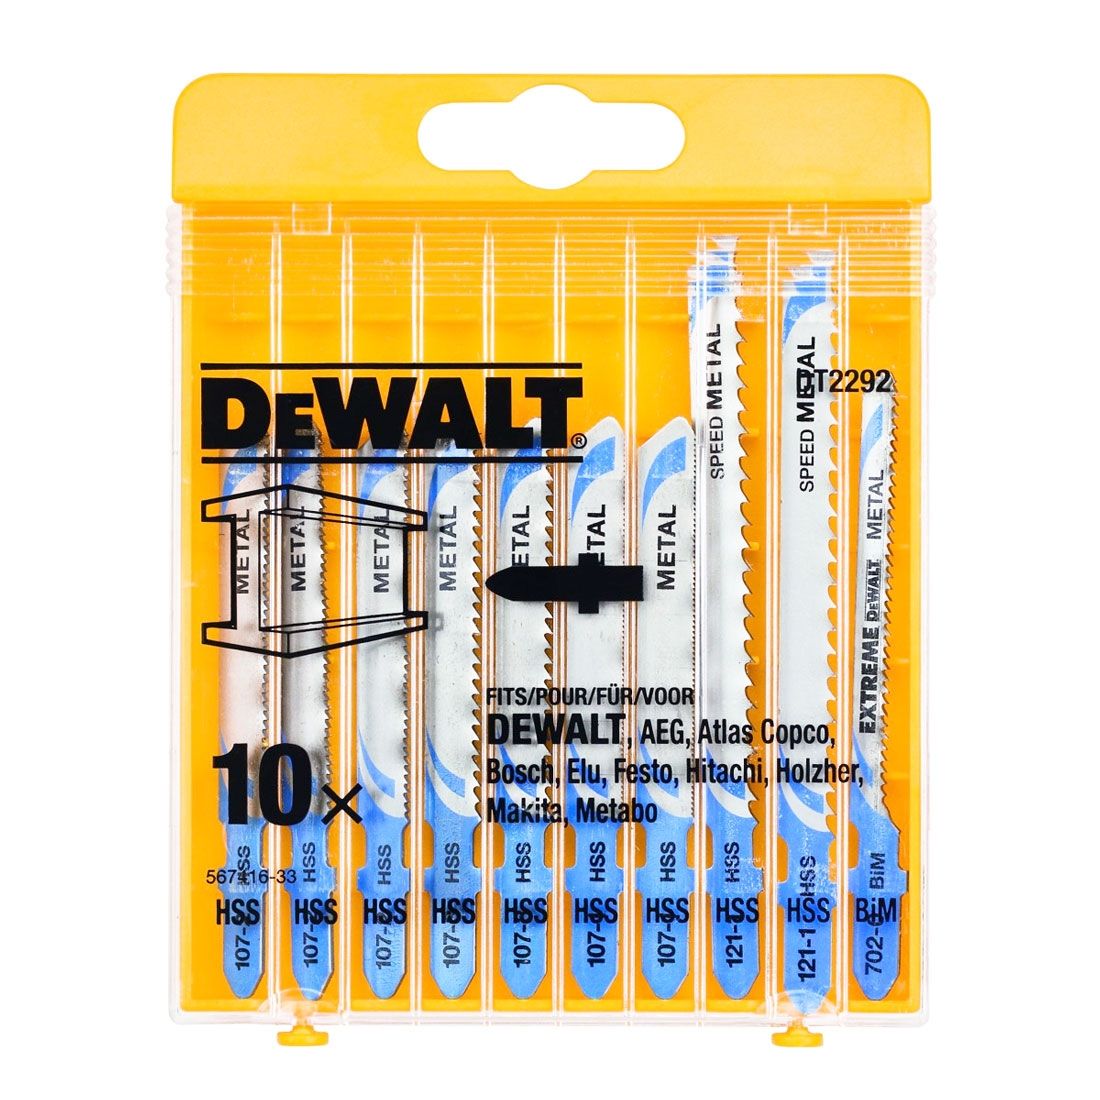 Dewalt DT2292 Jigsaw Blades 10 piece Metal Assorted DT2292 